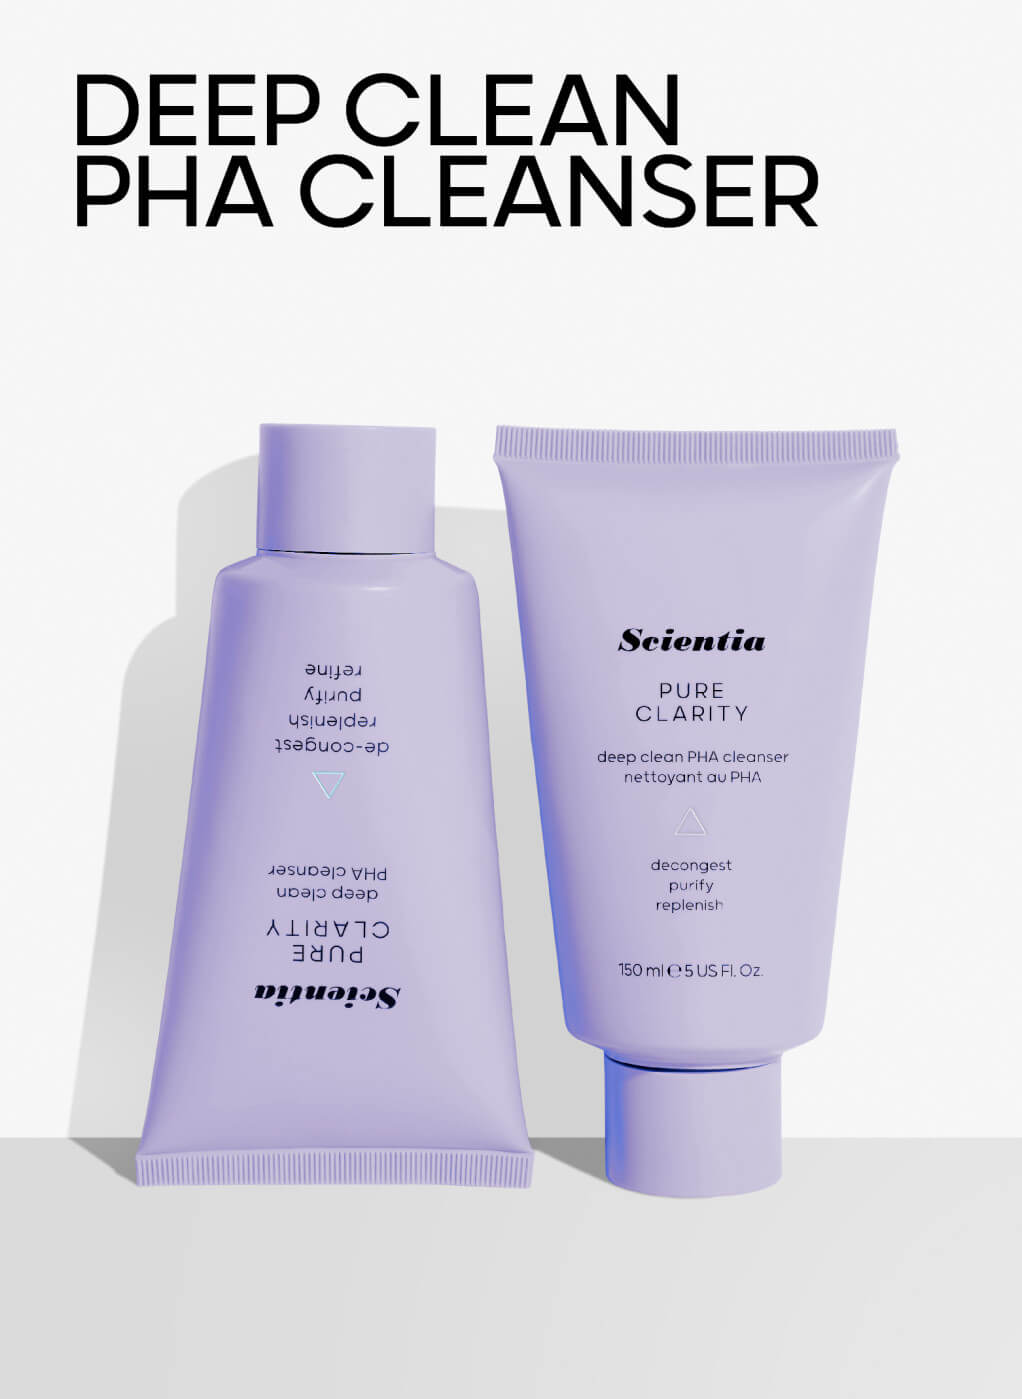 PHA cleanser skincare hacks